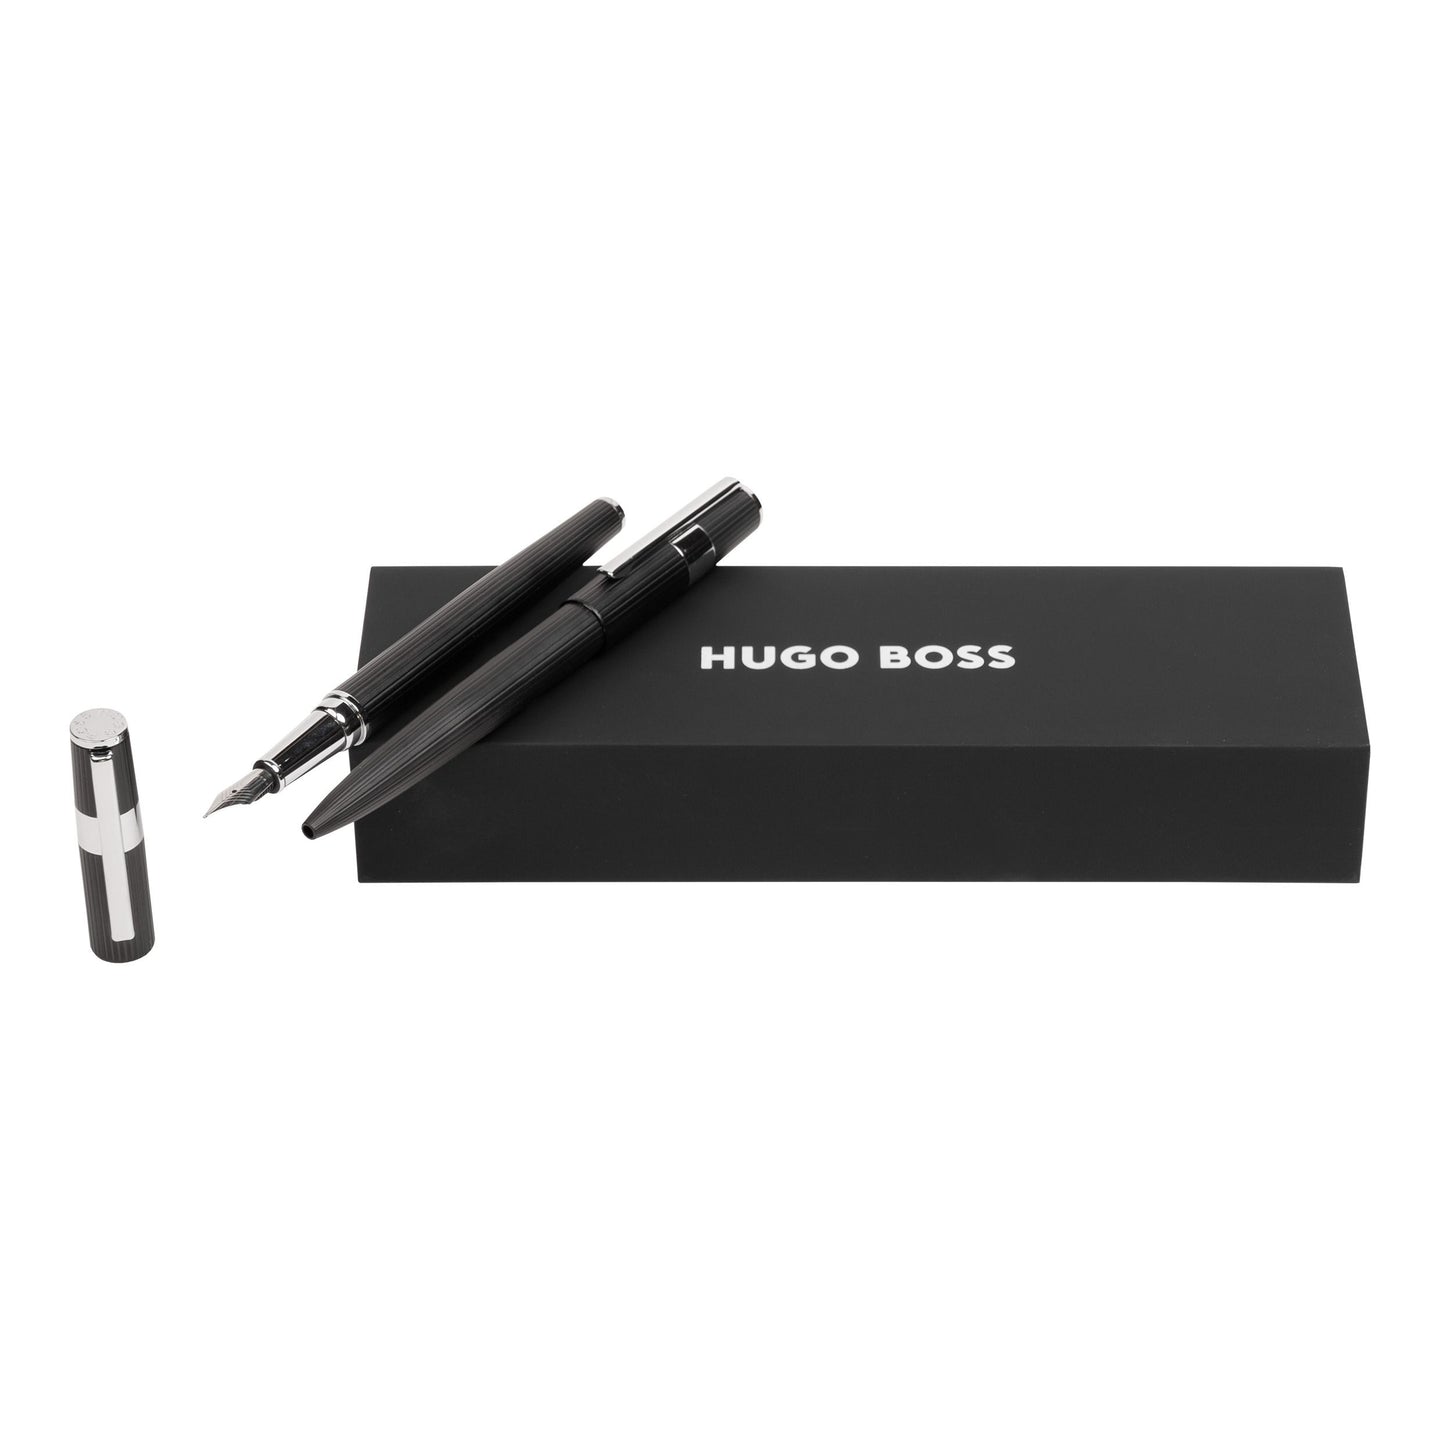 Hugo Boss Schreibset GEAR PINSTRIPE Black / Chrome | Kugelschreiber und Füllfederhalter